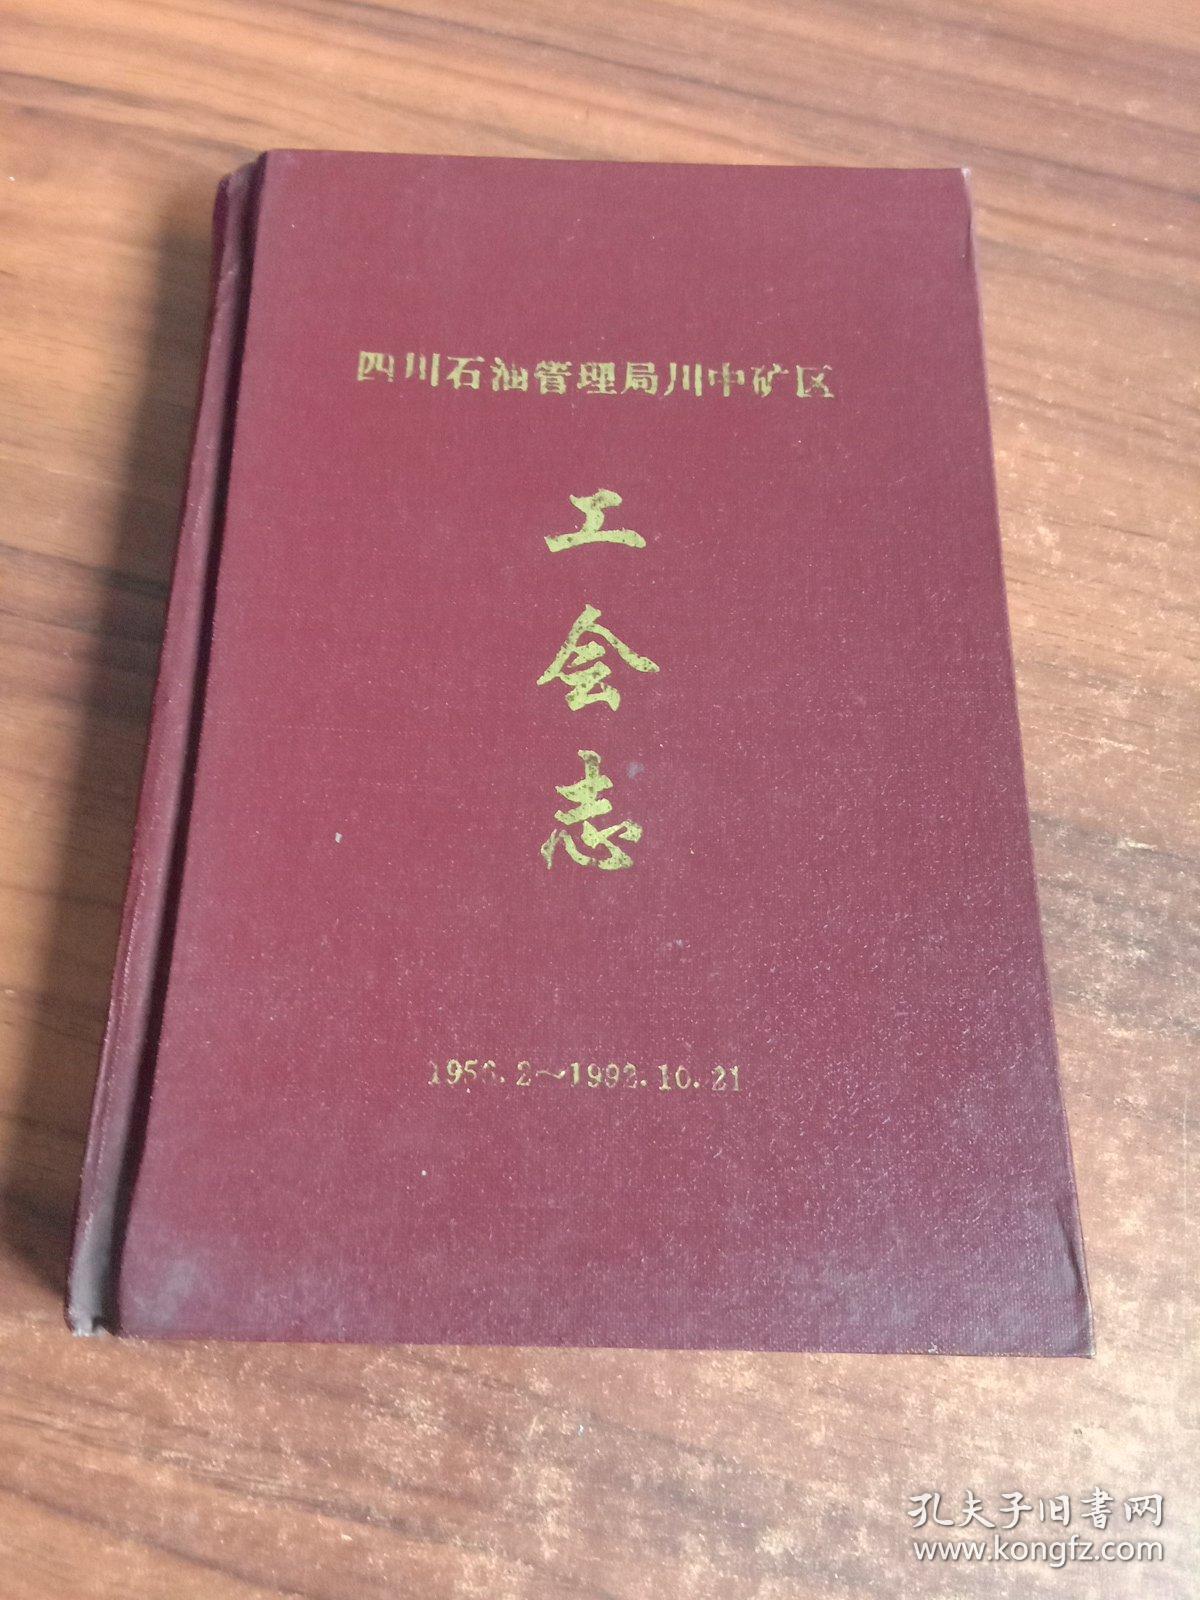 四川石油管理局川中矿区工会志1956-1992